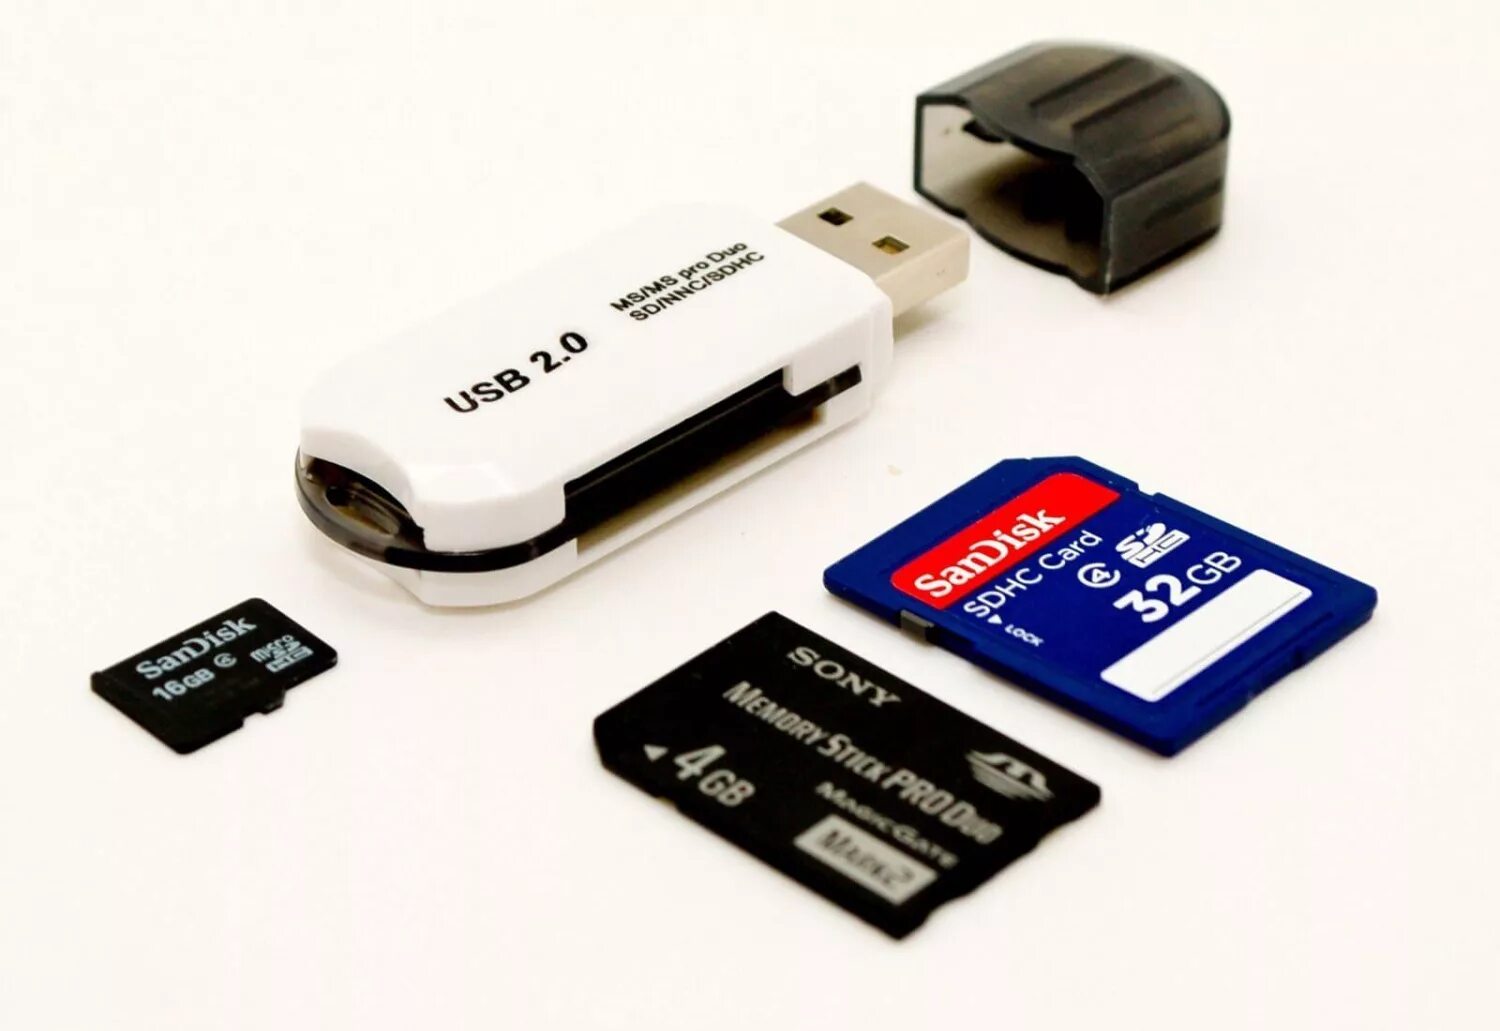 Флешка памяти для телефона. Флешки карты памяти картридеры. Картридер для микро SD карты и флешку. Юсб флешка для карты памяти. Юзбифлэшки карты памяти.